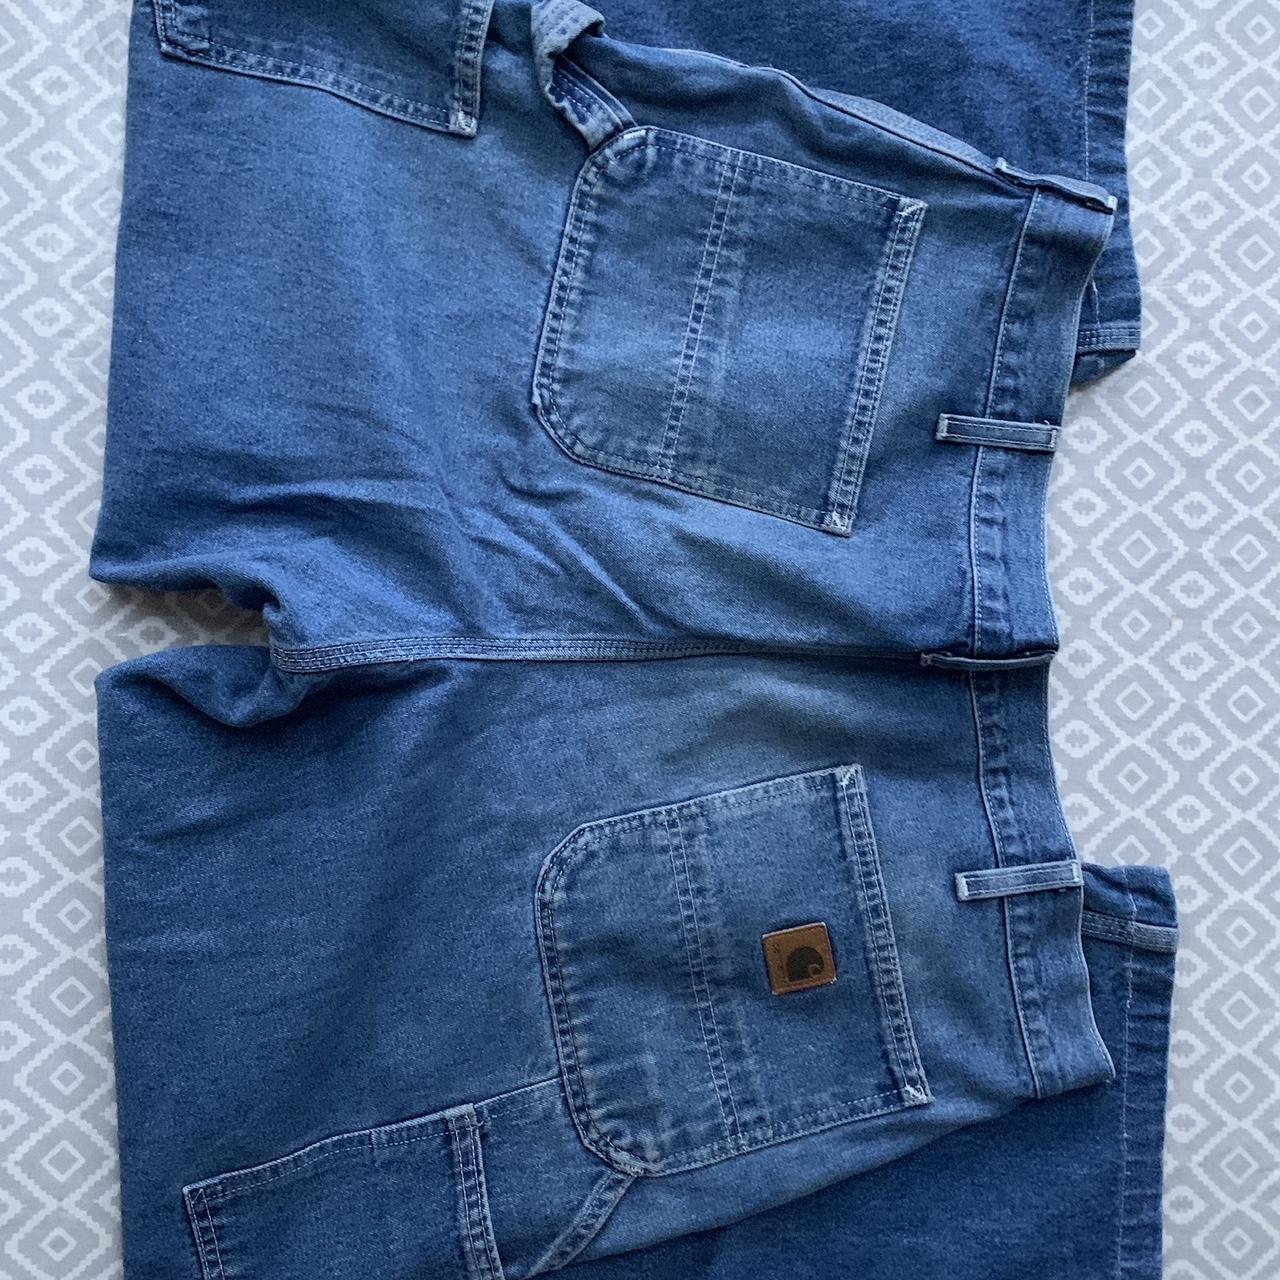 Baggy carhartt carpenter jeans. 38 X 30 - Depop